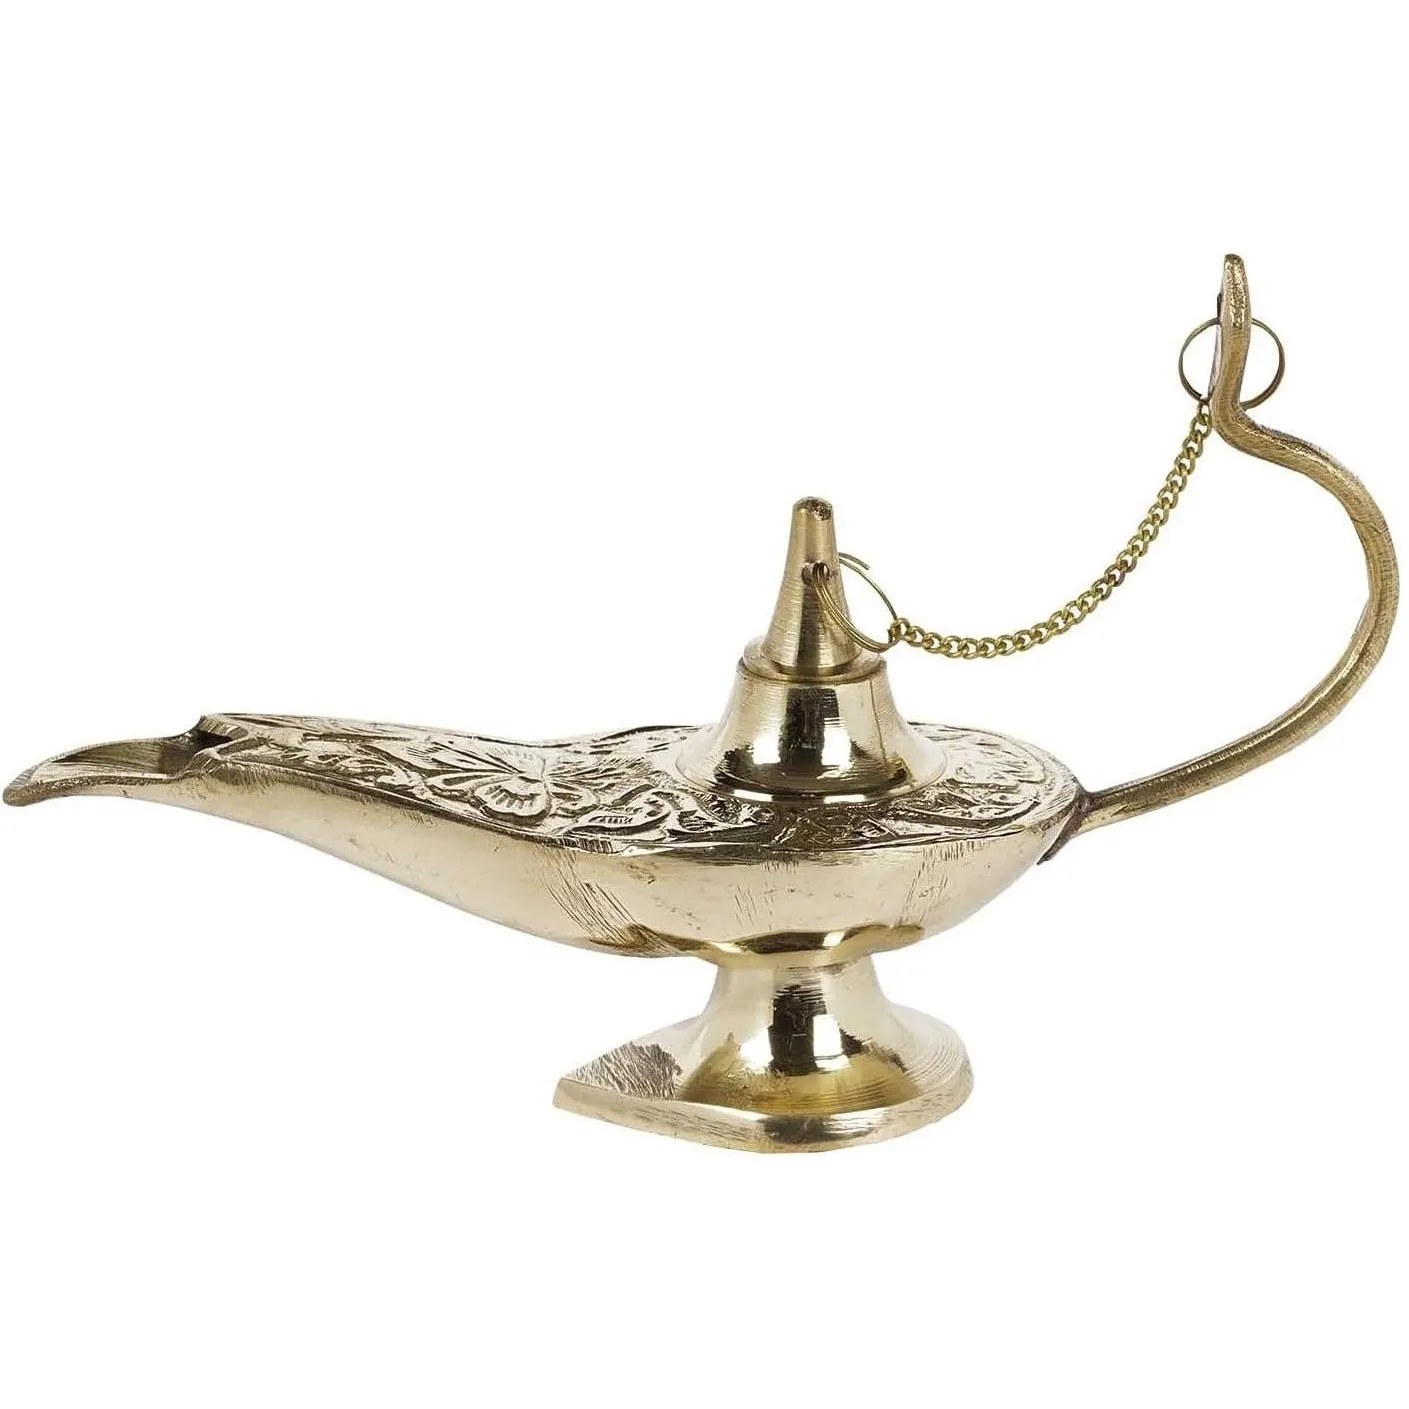 Tốt nhất bán handmade Brass Arabic Aladdin đèn đồng bằng đánh bóng Antique & thiết kế cổ điển trang trí nội thất Aladdin đèn Ấn Độ Nhà cung cấp